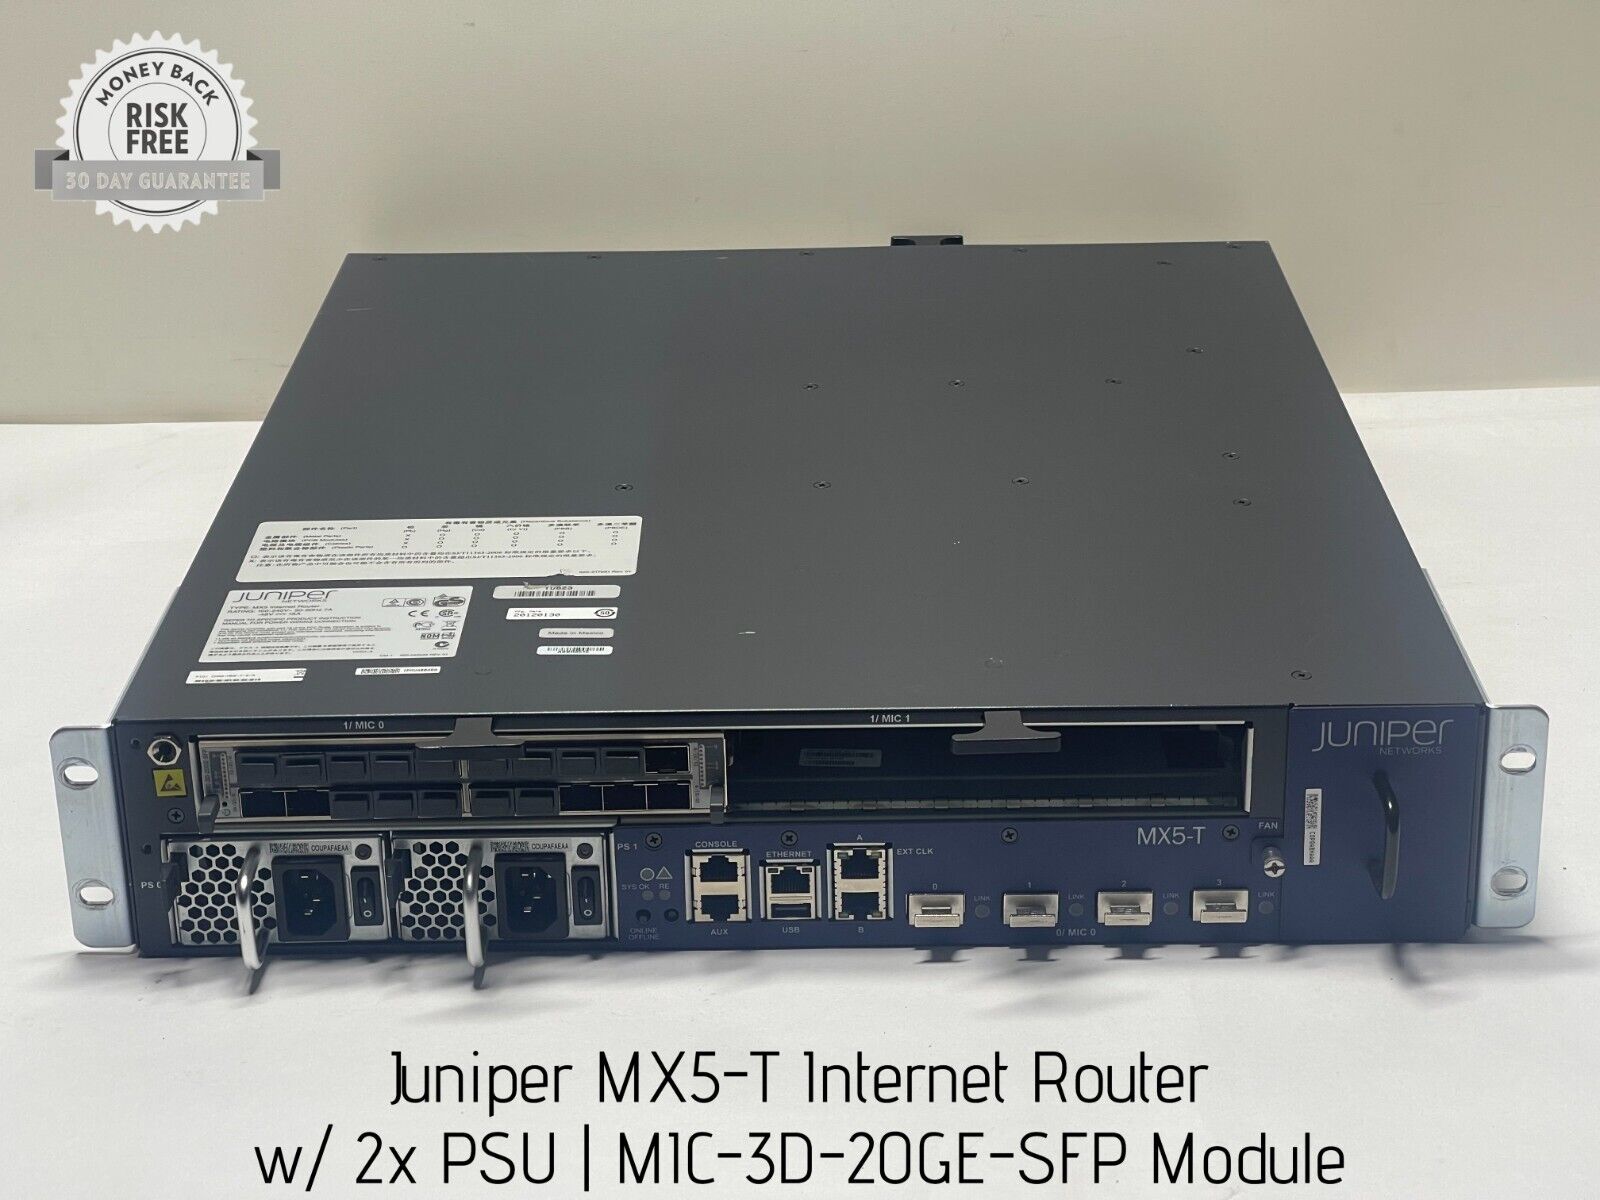 Juniper MX5-T Internet Router w/ 2x PSU, MIC-3D-20GE-SFP Module